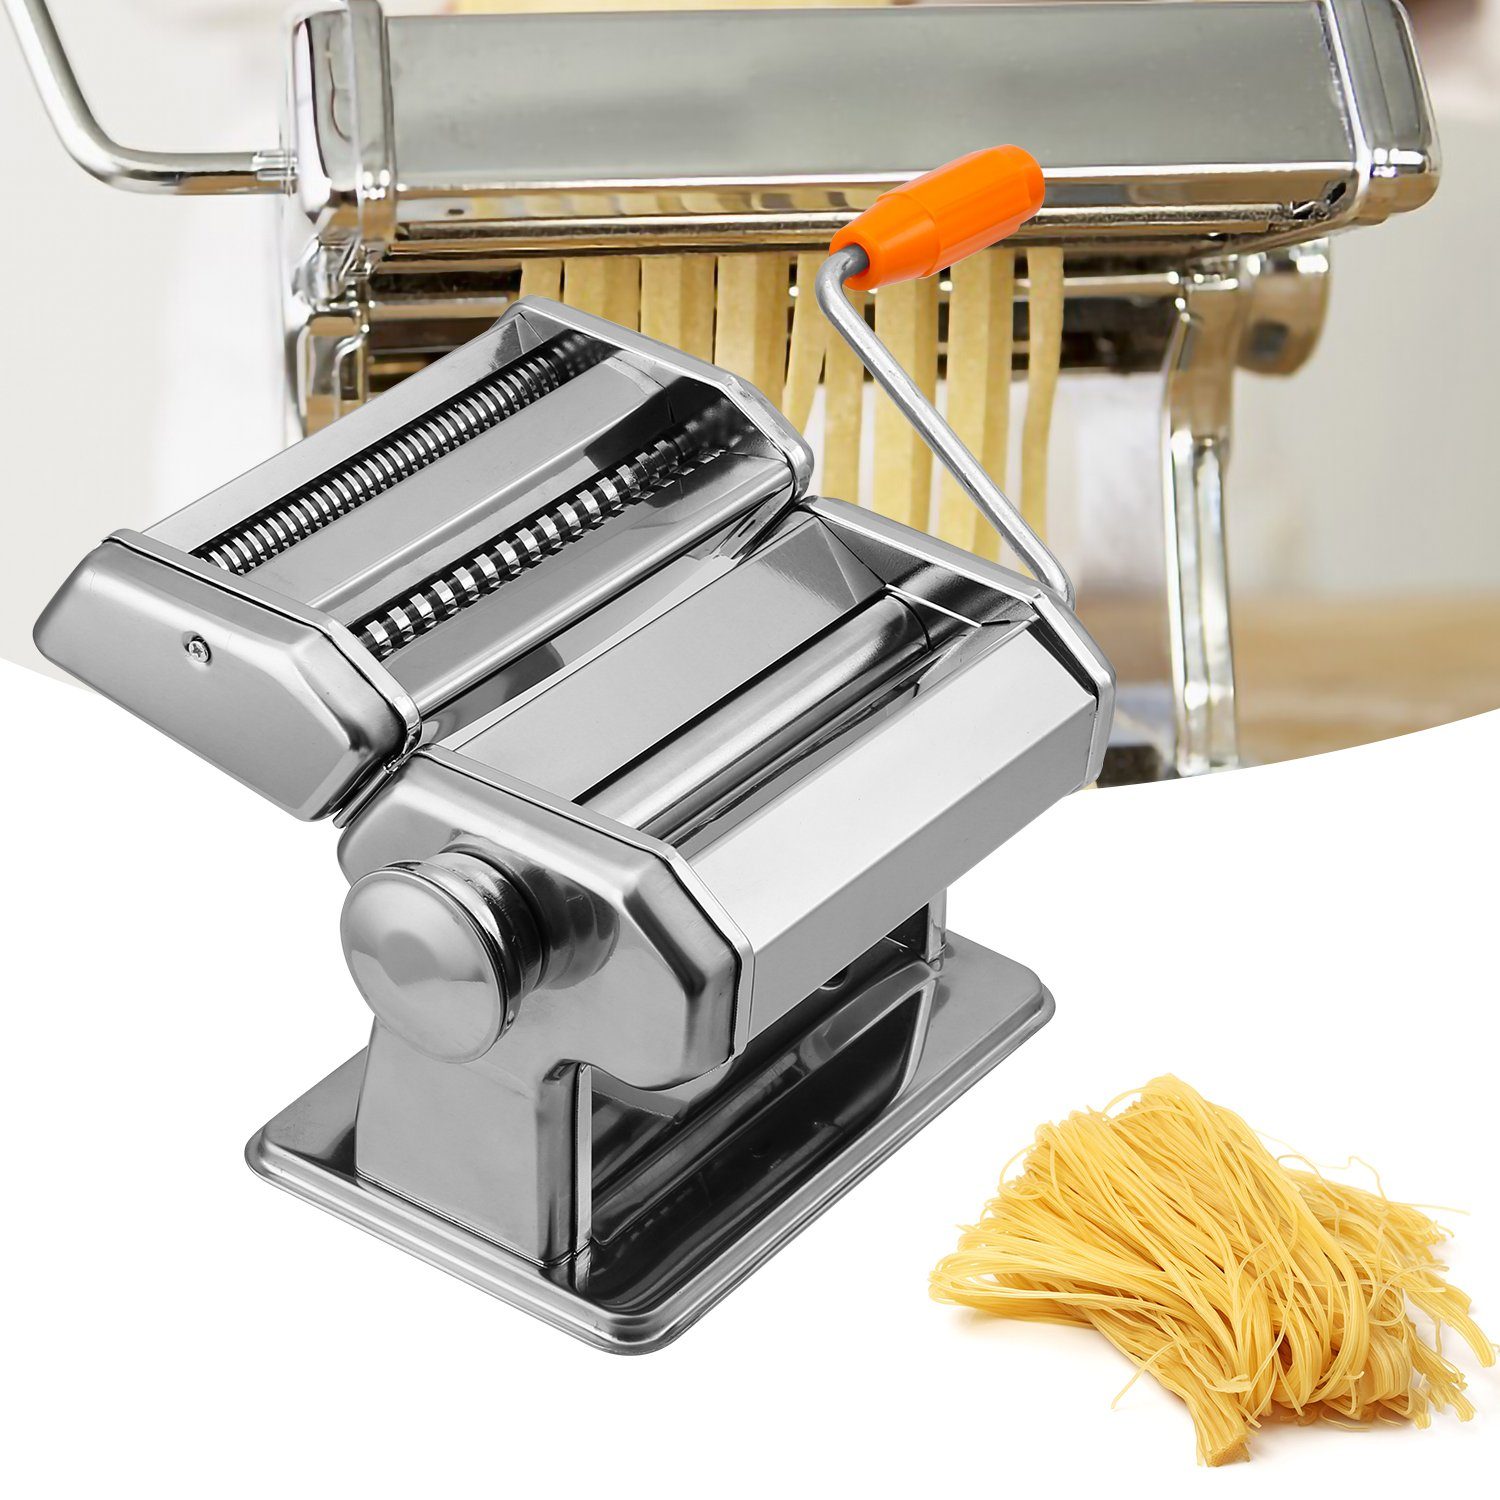 Frische Spaghetti Pasta Pastamaschine Cannelloni Nudelmaschine Maker manuelle, Gimisgu Bandnudeln Walze Edelstahl für Nudelaufsätze Lasagne